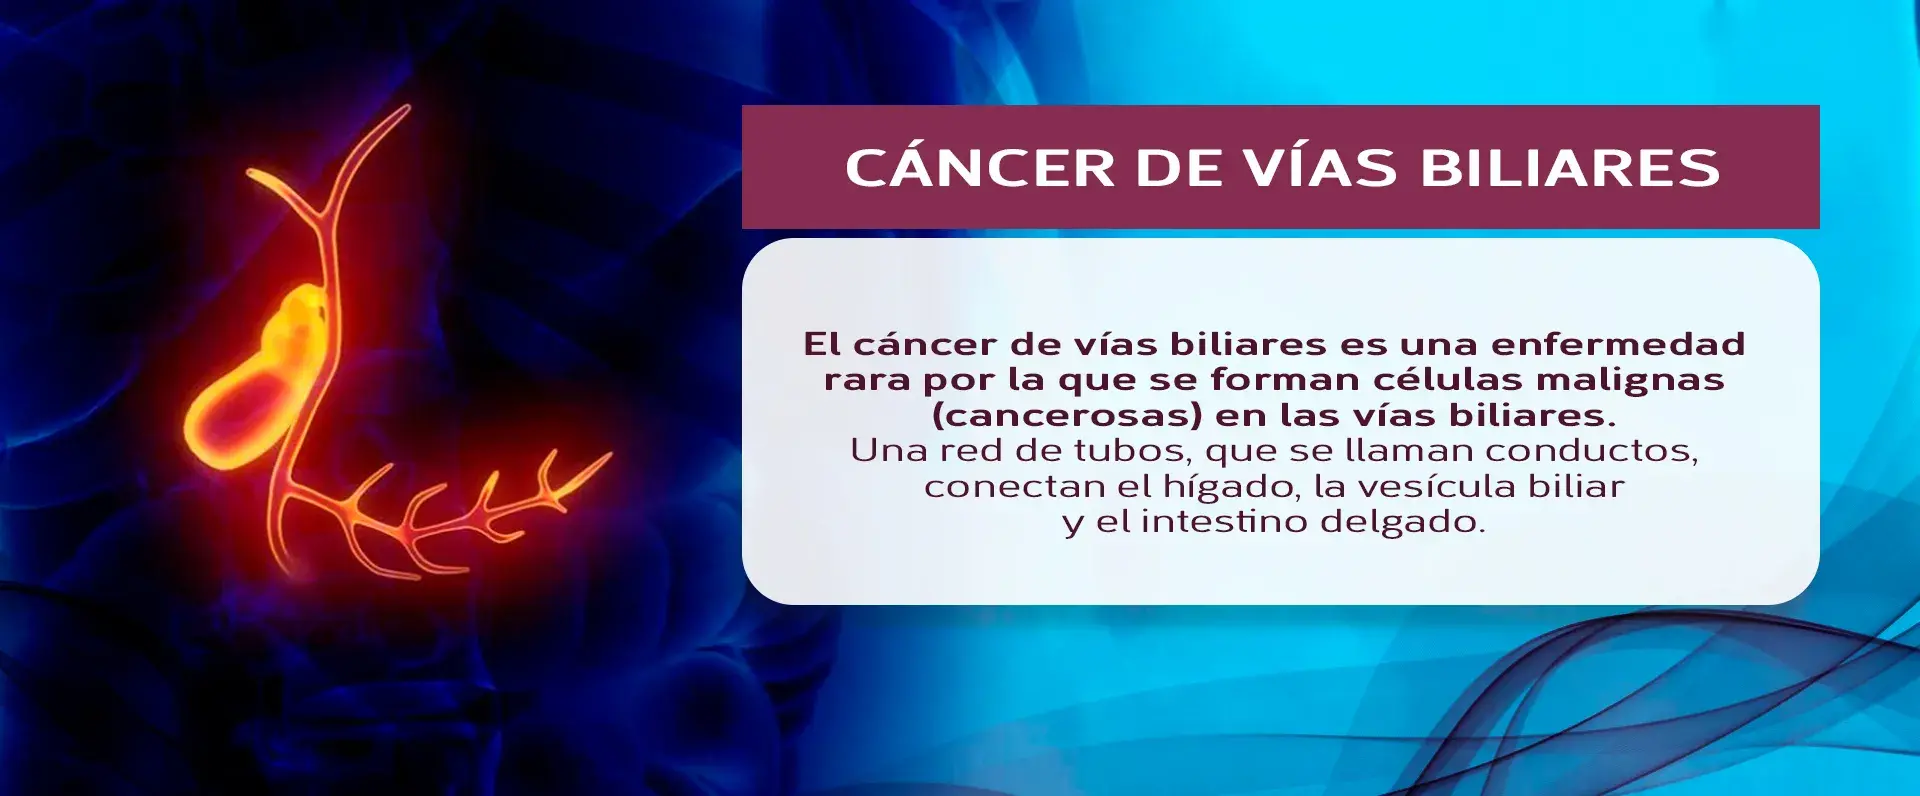 El cáncer de vías biliares es una enfermedad rara que se da en los conductos del hígado, vesícula biliar e intestino delgado.